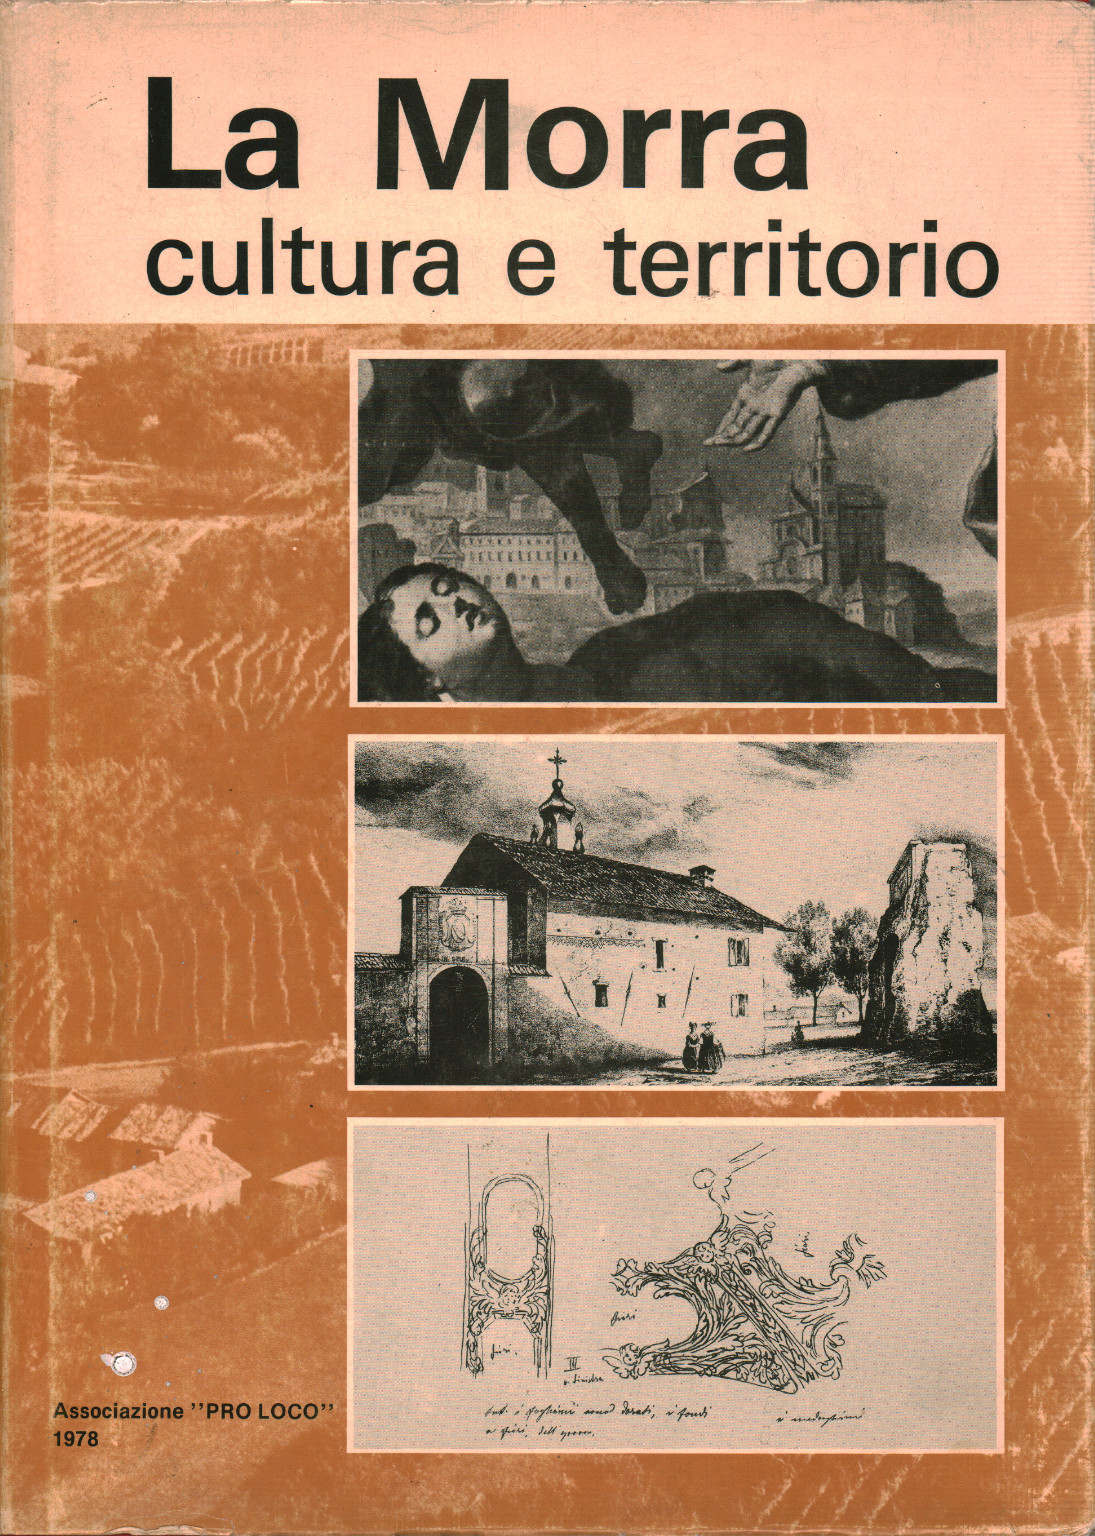 La Morra kultur und territorium, s.zu.